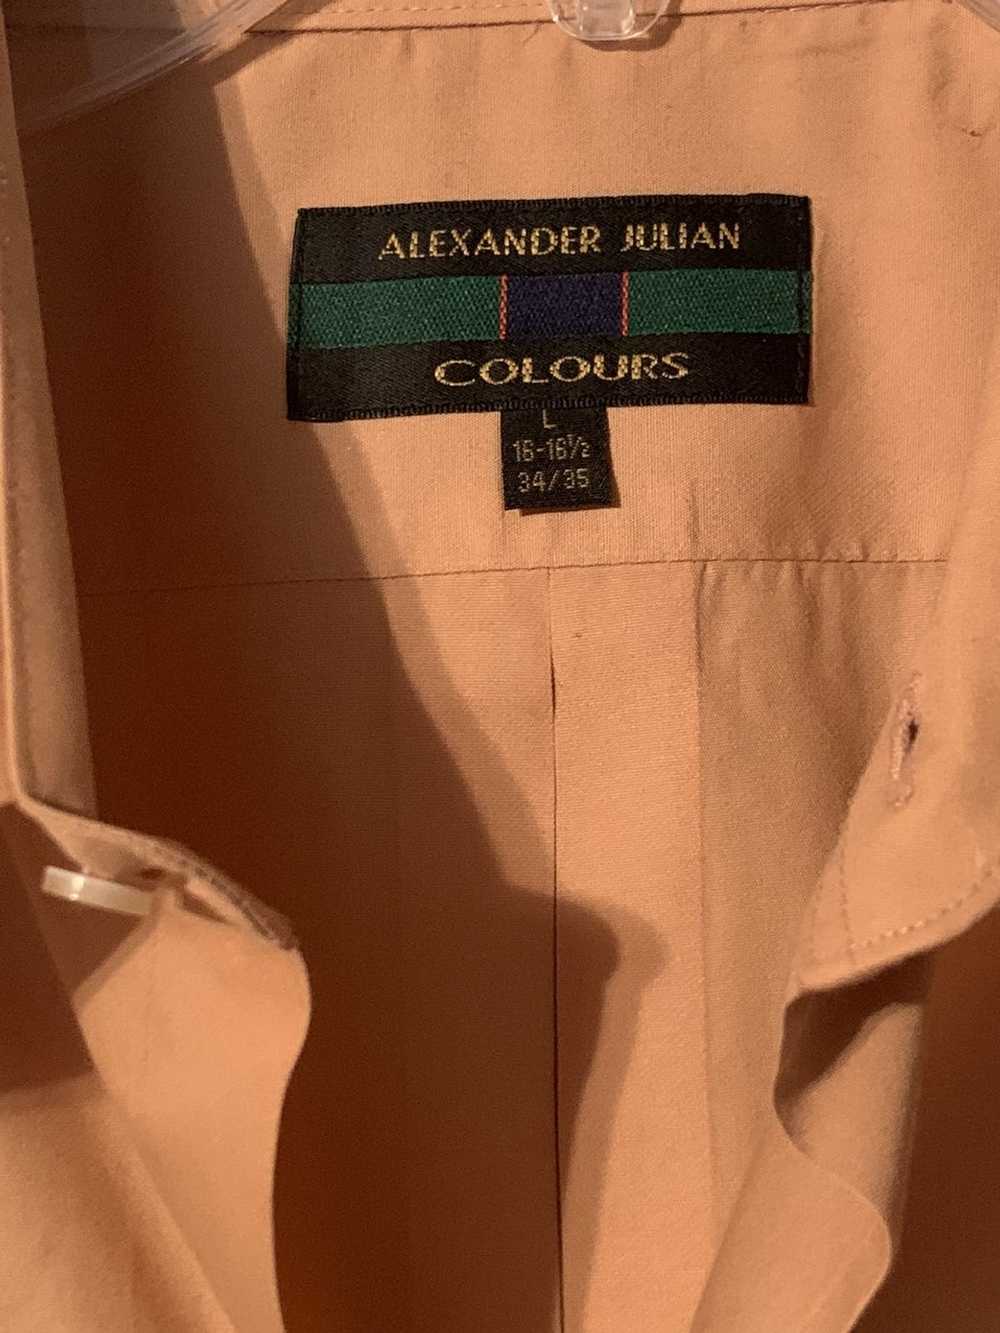 Alexander Julian Alexander Julian Colours Mens Dr… - image 2